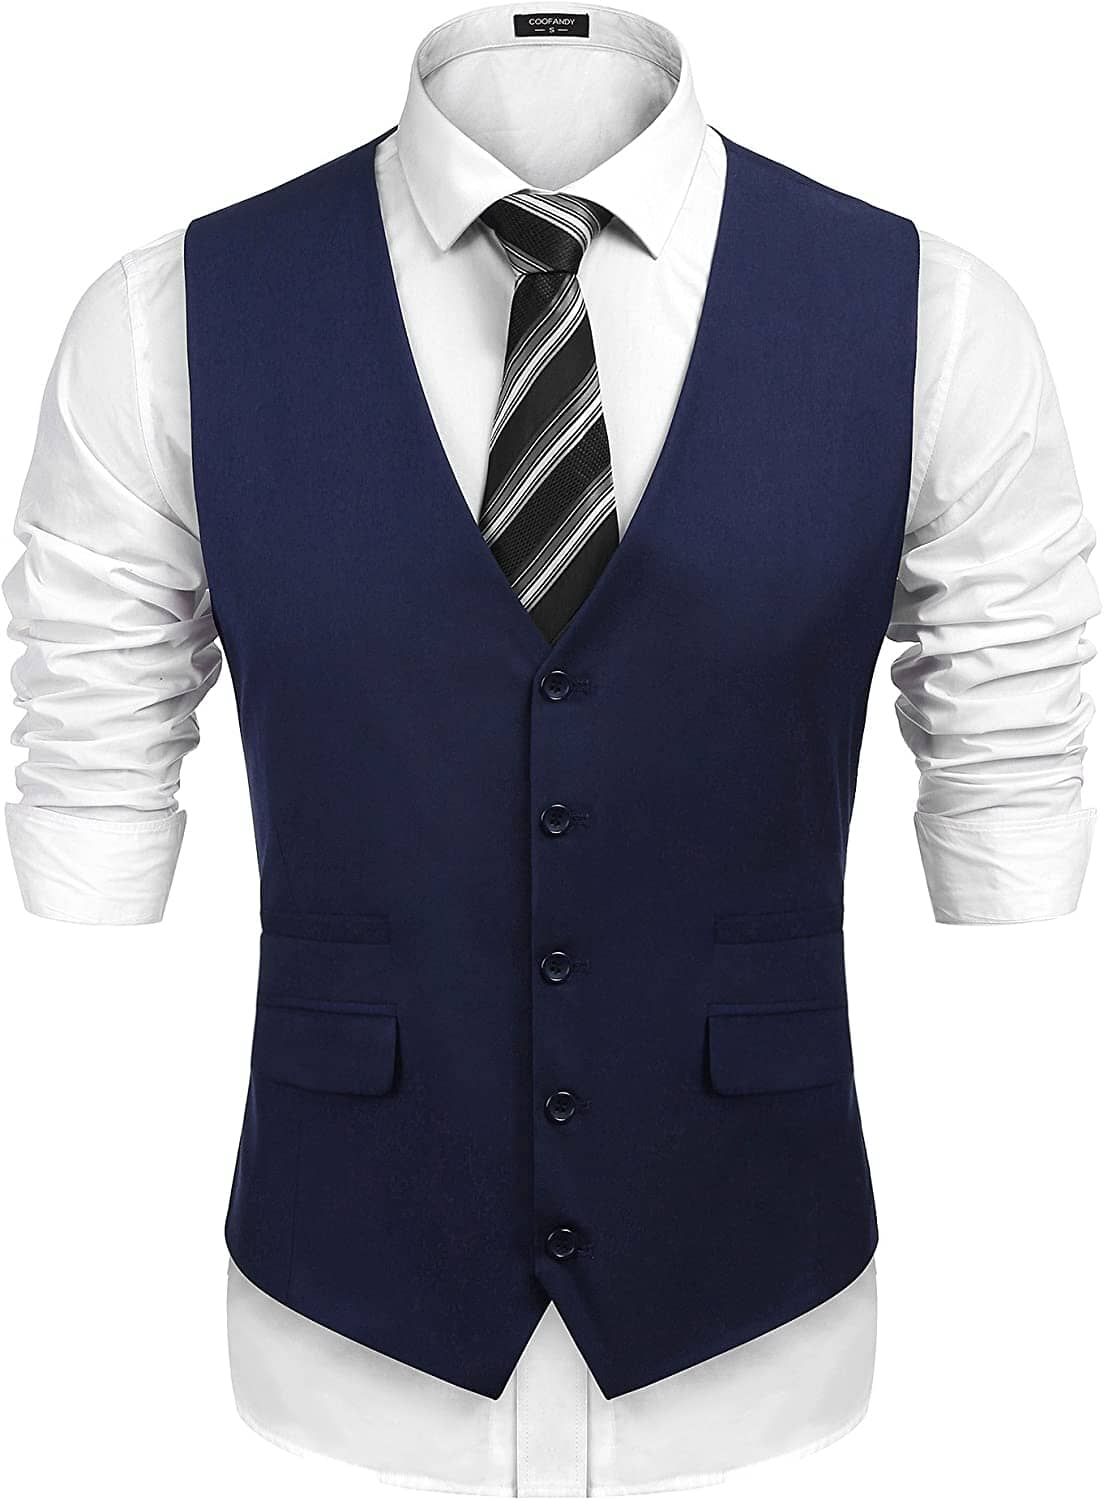 Slim Fit Business Suit Vest (US Only) Vest COOFANDY Store Navy Blue S 